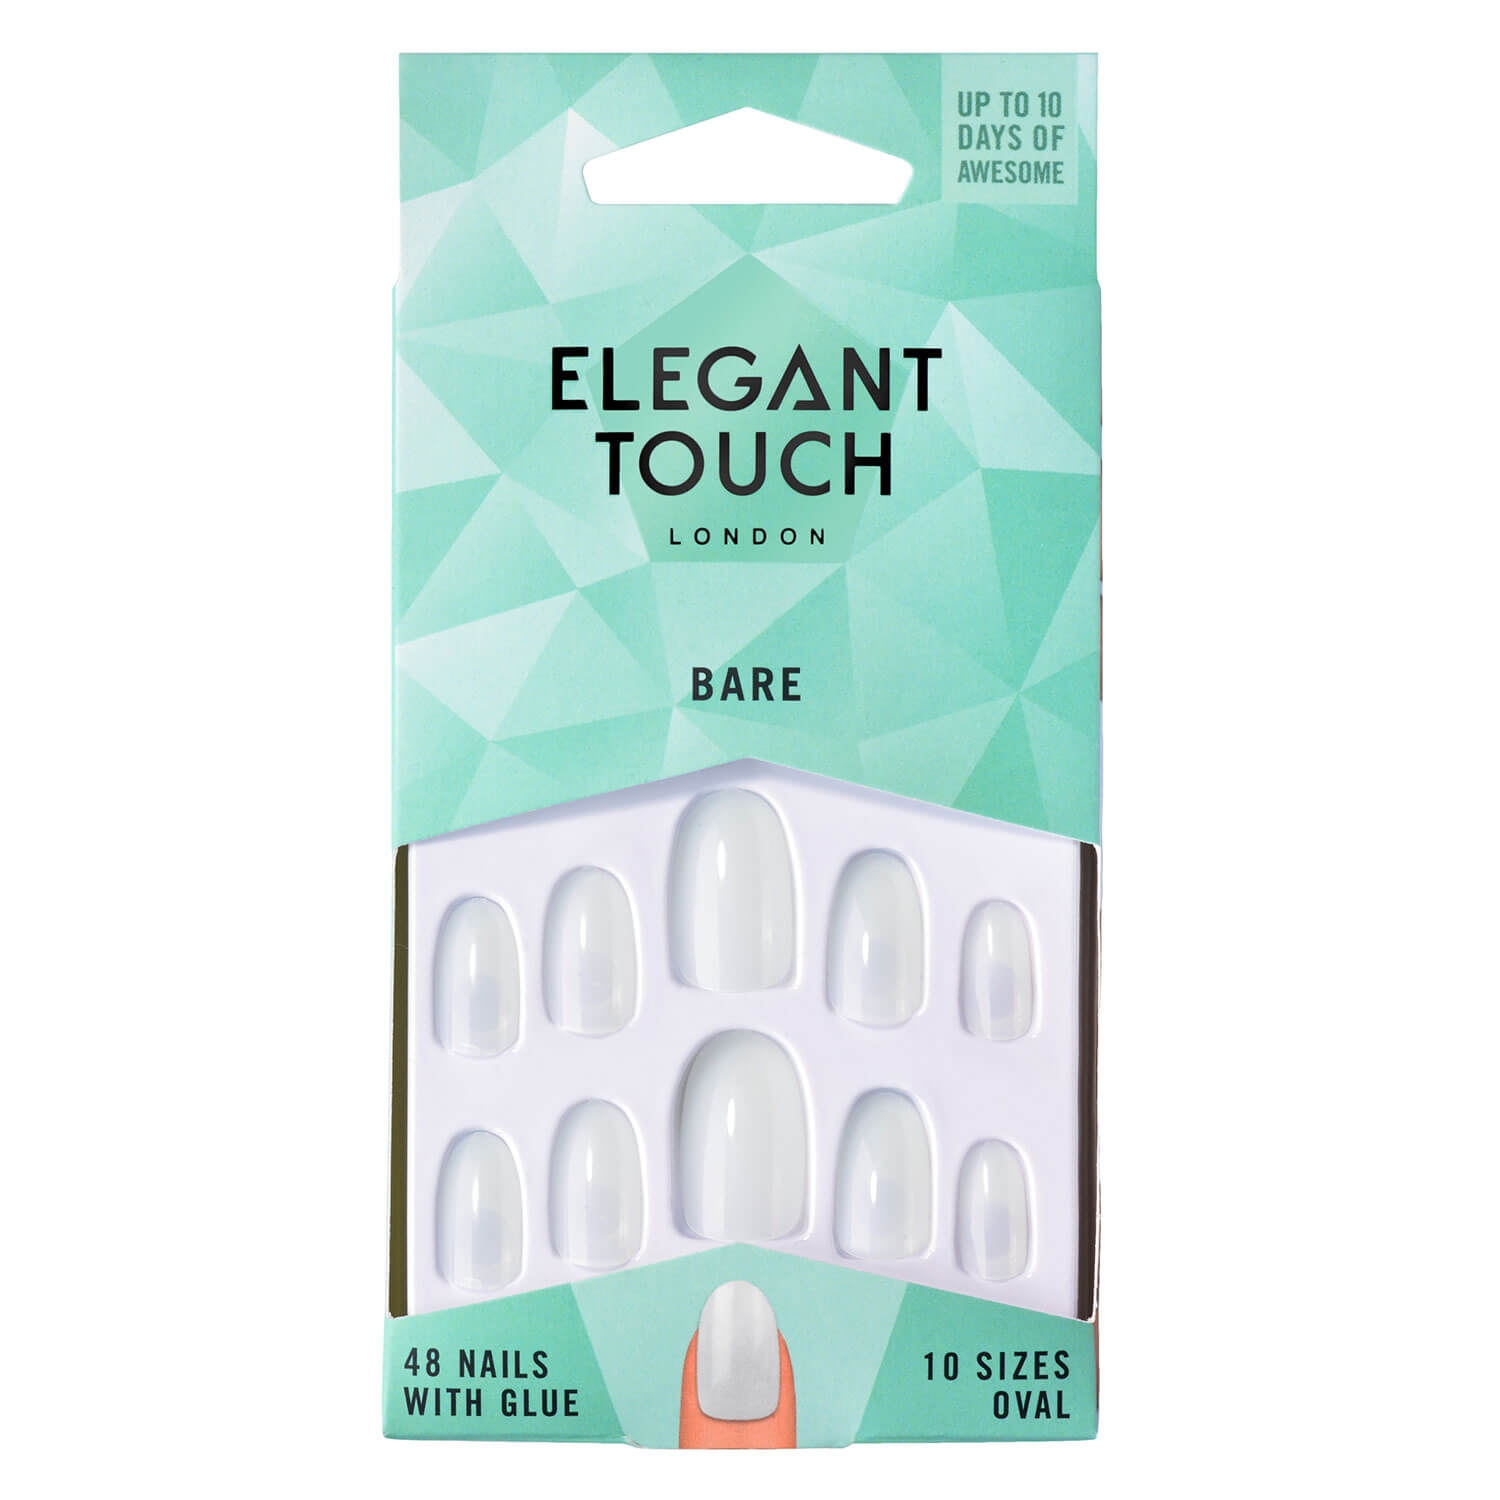 Produktbild von Elegant Touch - Bare Nails Oval